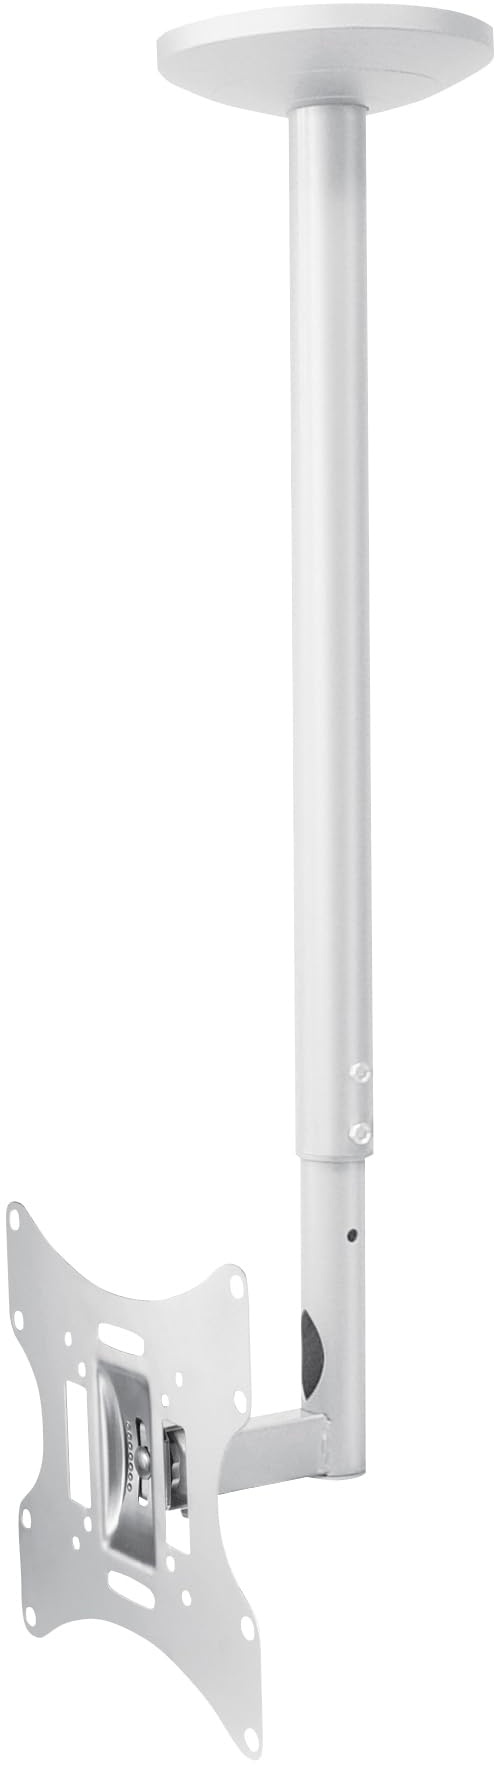 mywall HL4-2L VESA Deckenhalterung für LCD / LED / Plasma Fernseher 23° (58 cm) - 42" (107 cm) silber 30 kg 20 Jahre Garantie